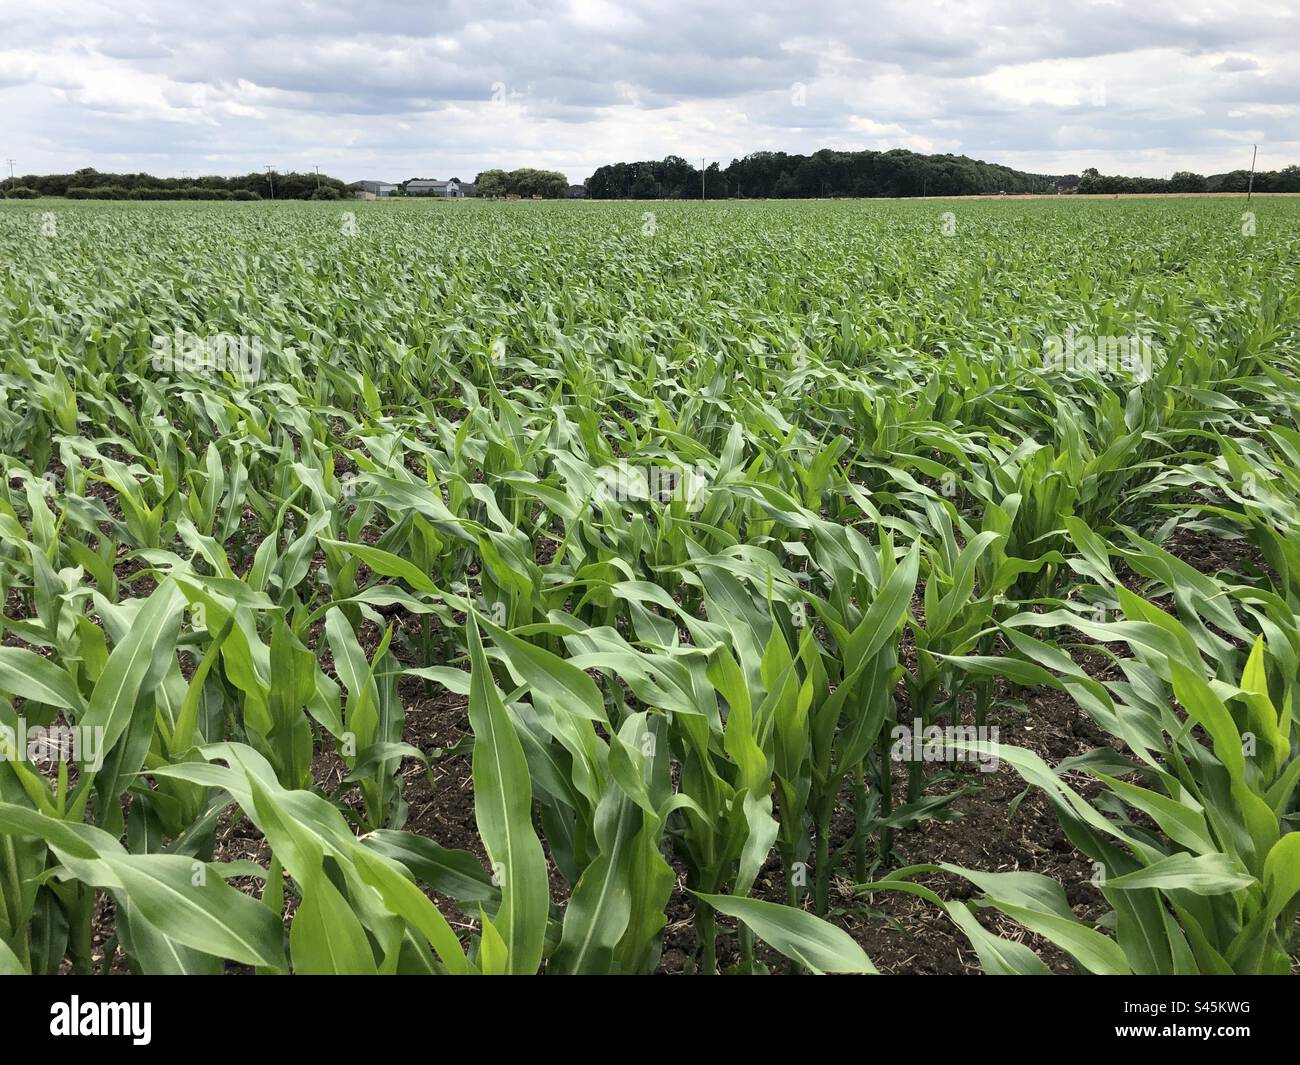 Une récolte de maïs cultivée pour la production d'énergie électrique dans le North Lincolnshire, Angleterre, Royaume-Uni Banque D'Images